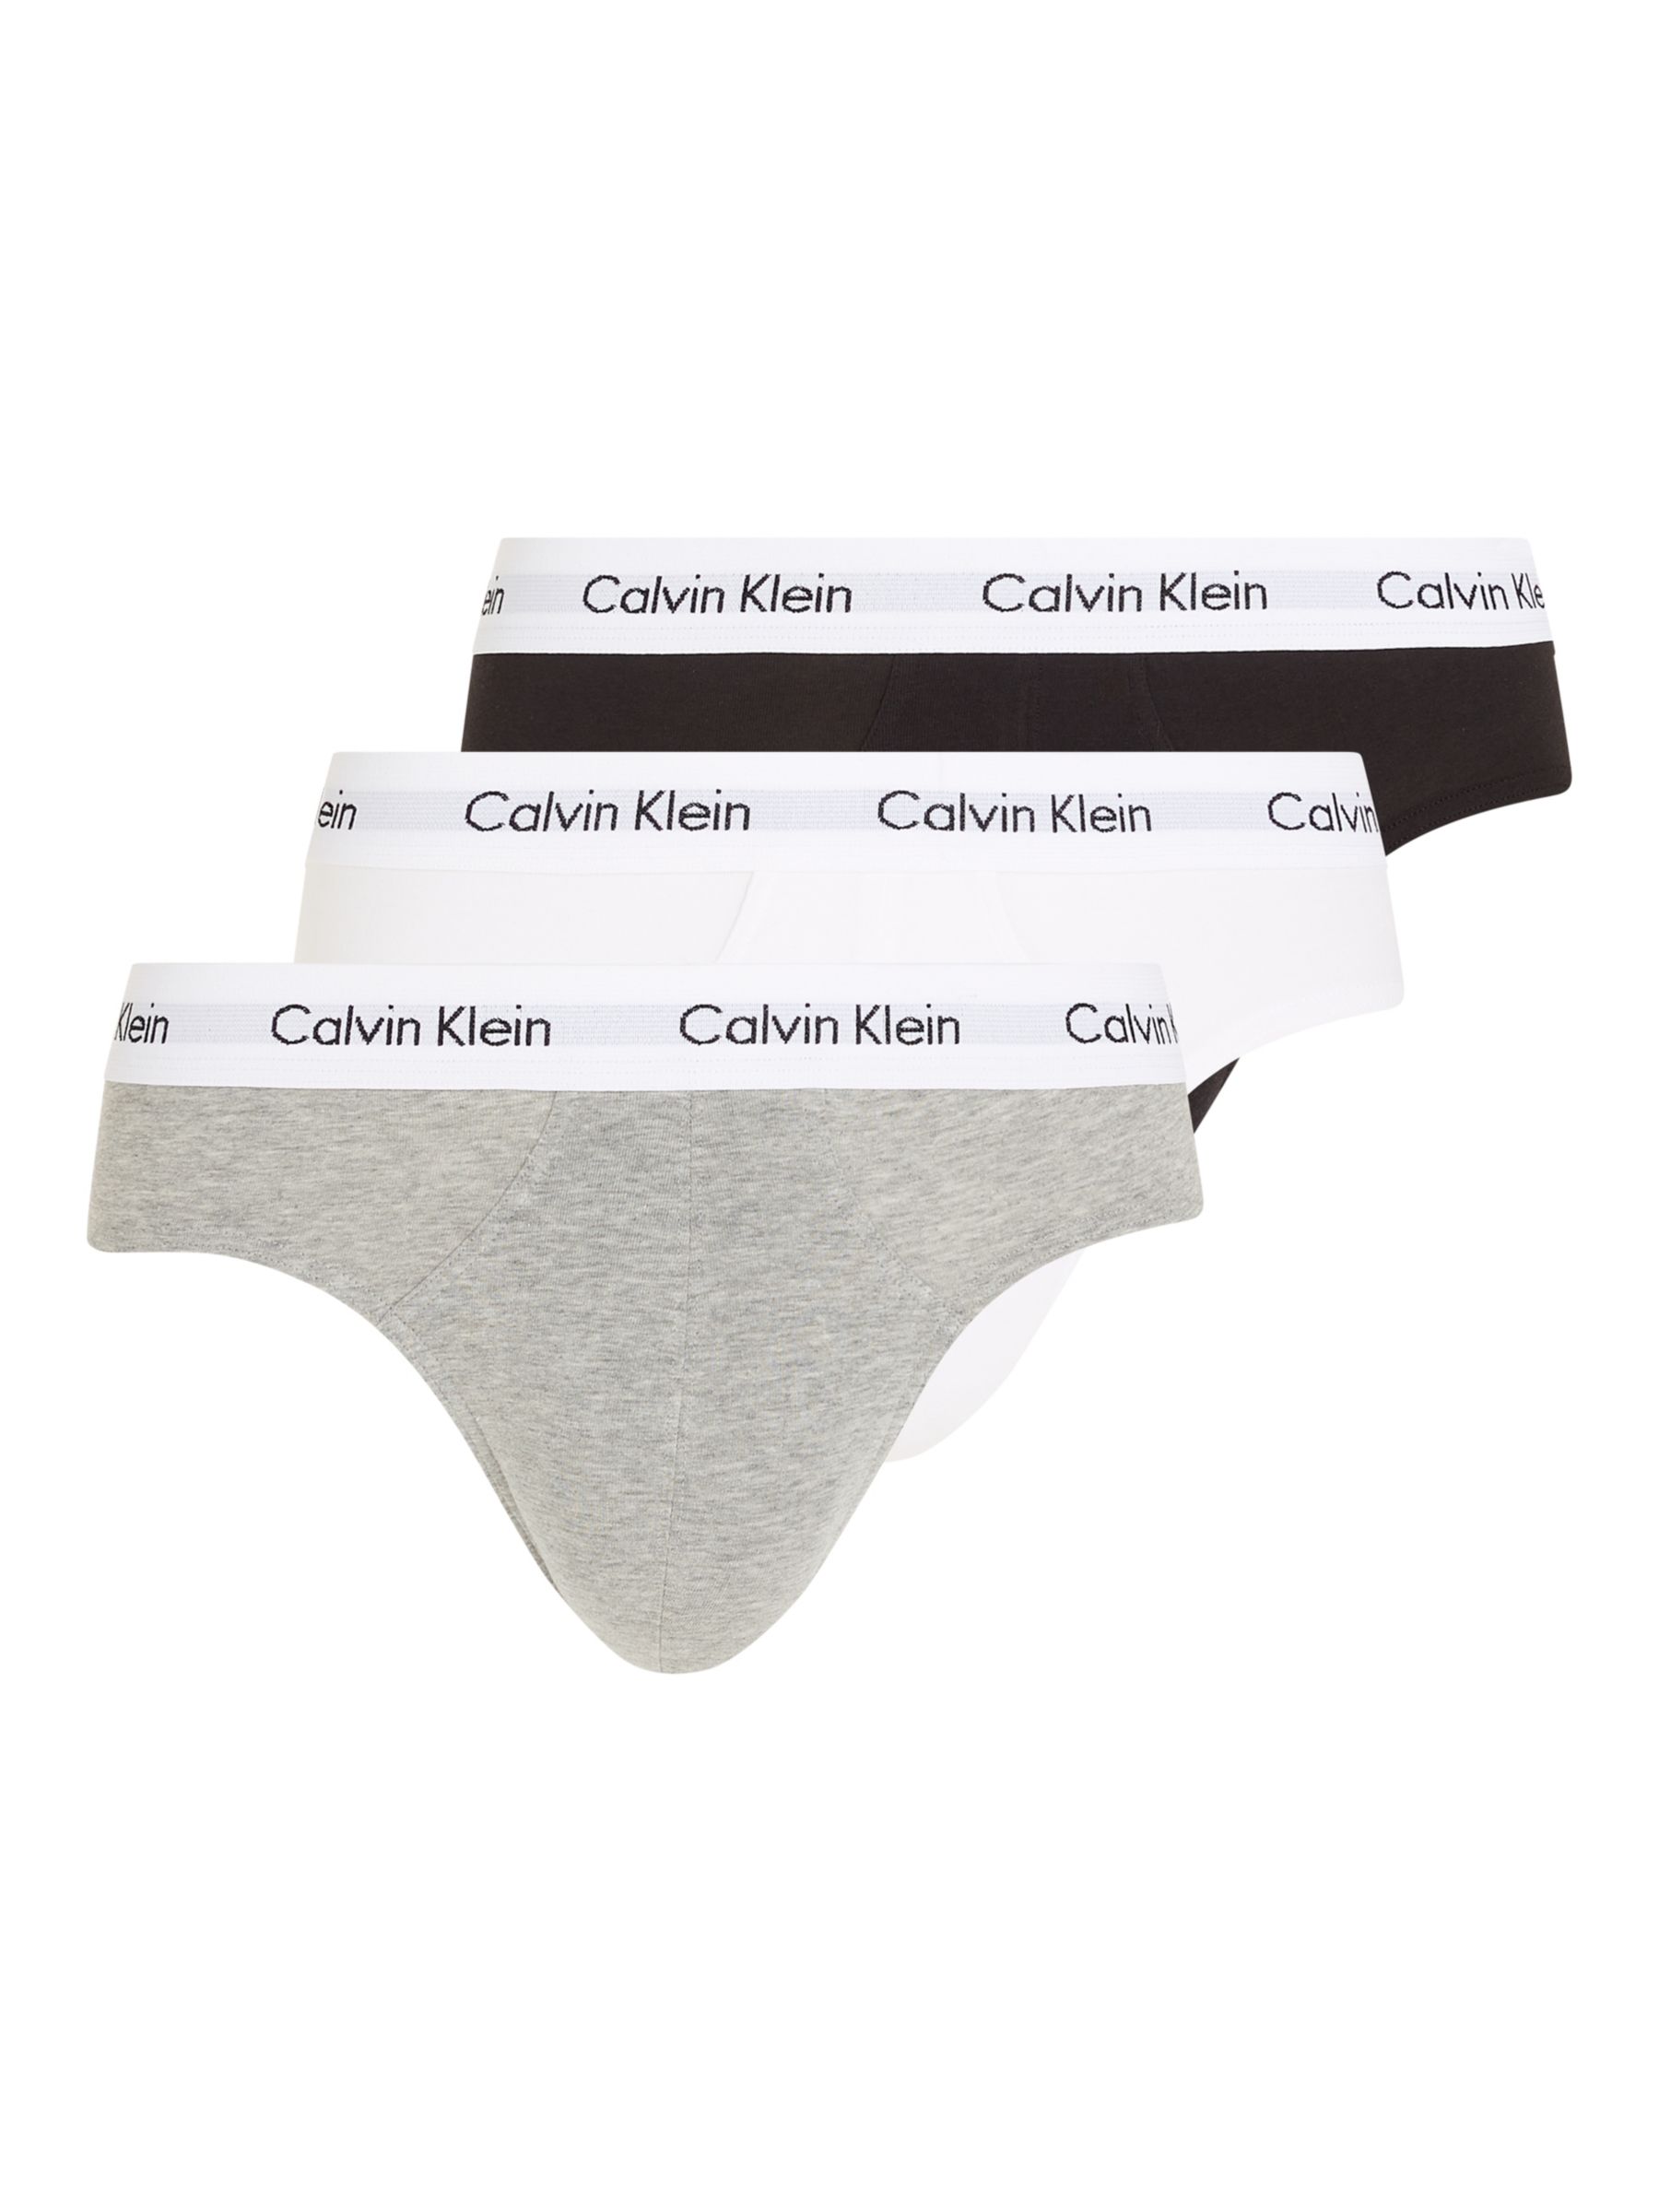 Klein Underwear Cotton Briefs, Pack of Black/White/Grey at John Lewis & Partners